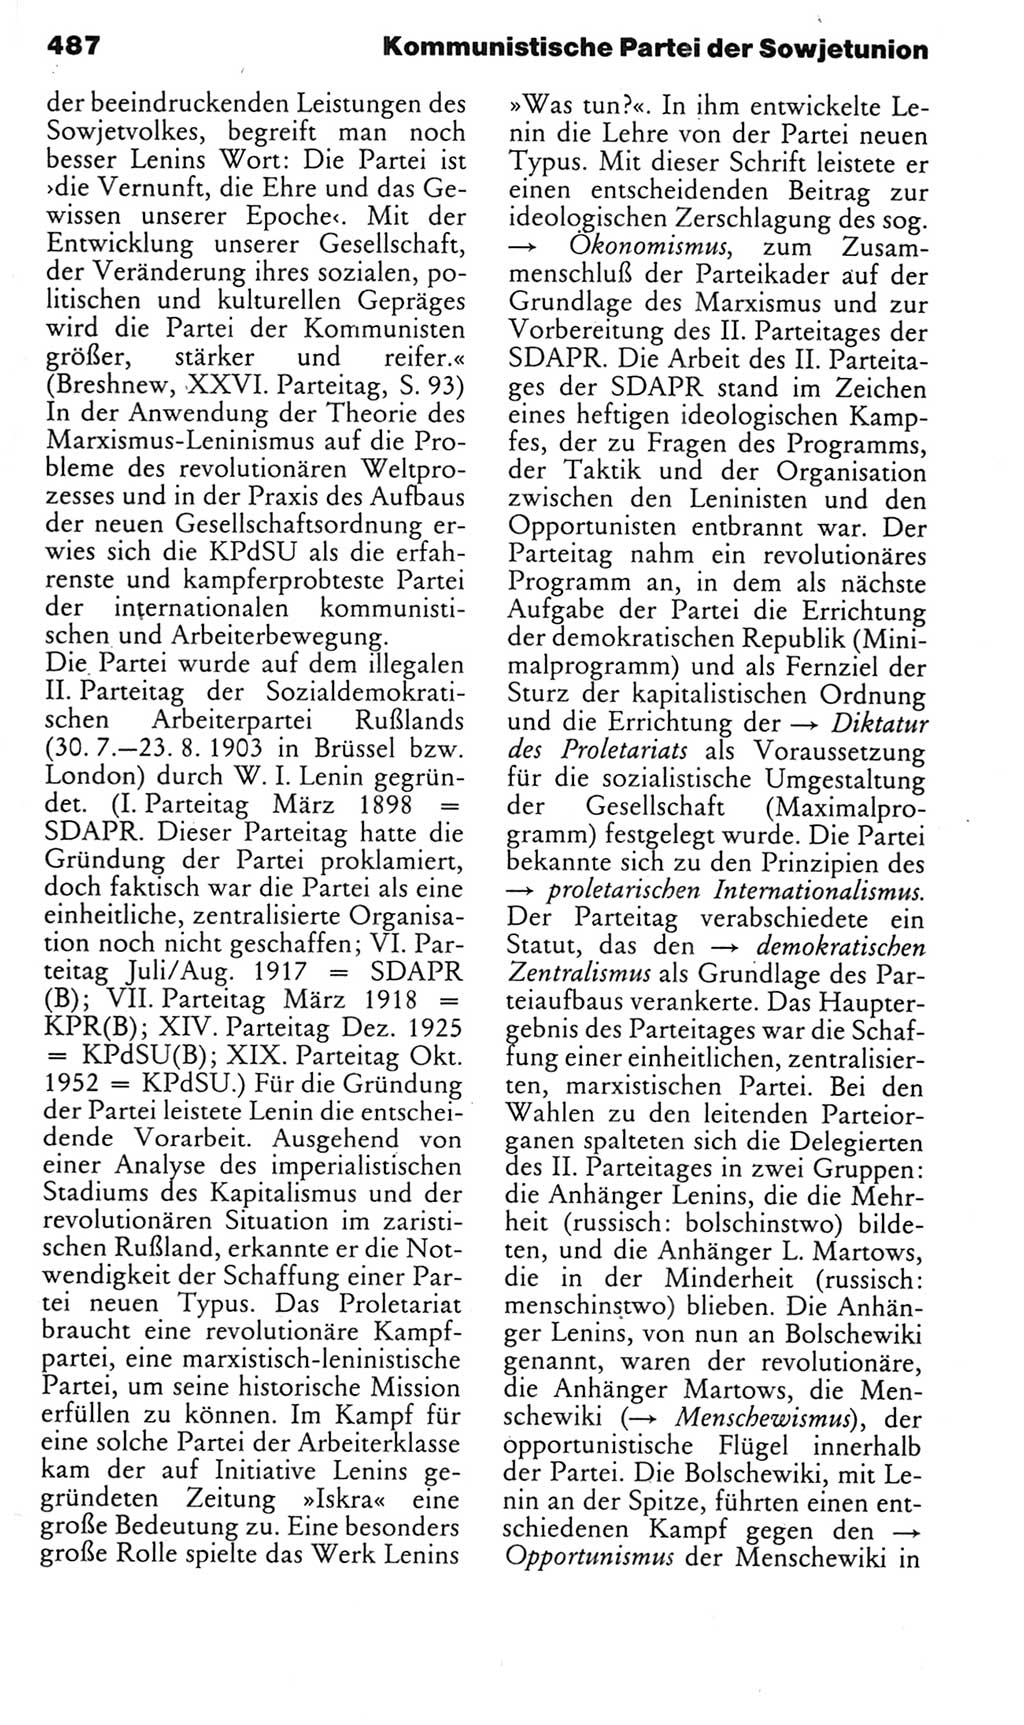 Kleines politisches Wörterbuch [Deutsche Demokratische Republik (DDR)] 1985, Seite 487 (Kl. pol. Wb. DDR 1985, S. 487)